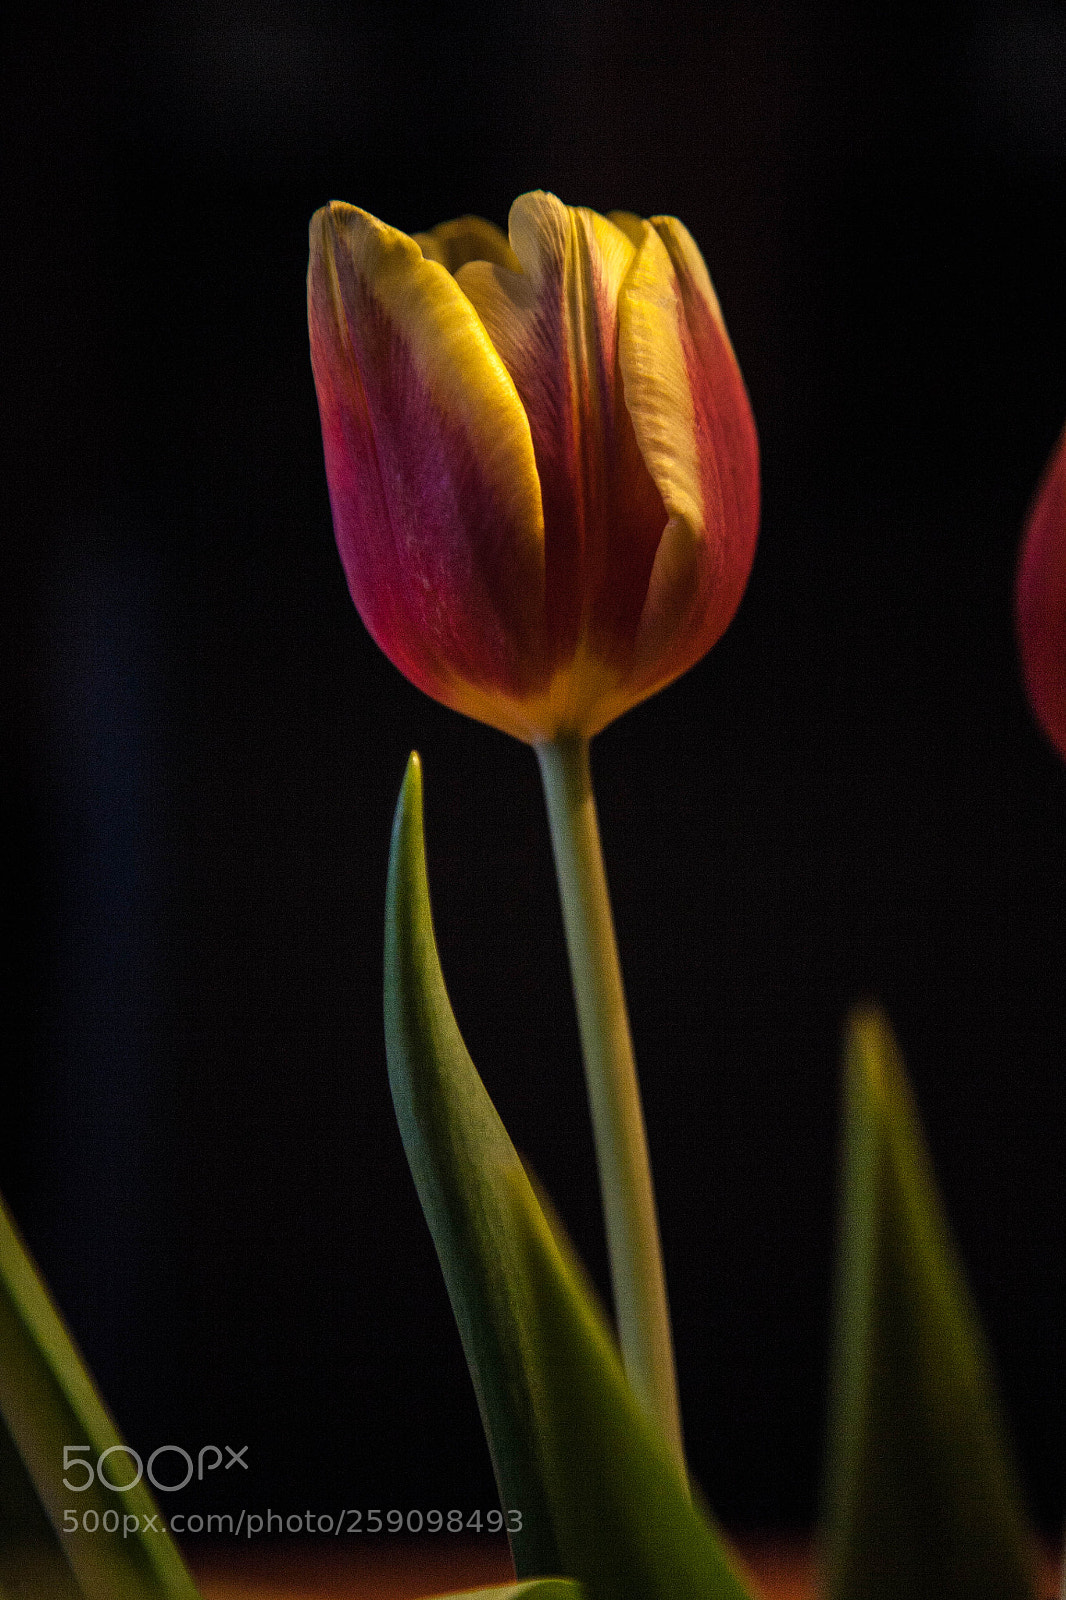 Canon EOS 5D sample photo. Tulpen aus amsterdam photography